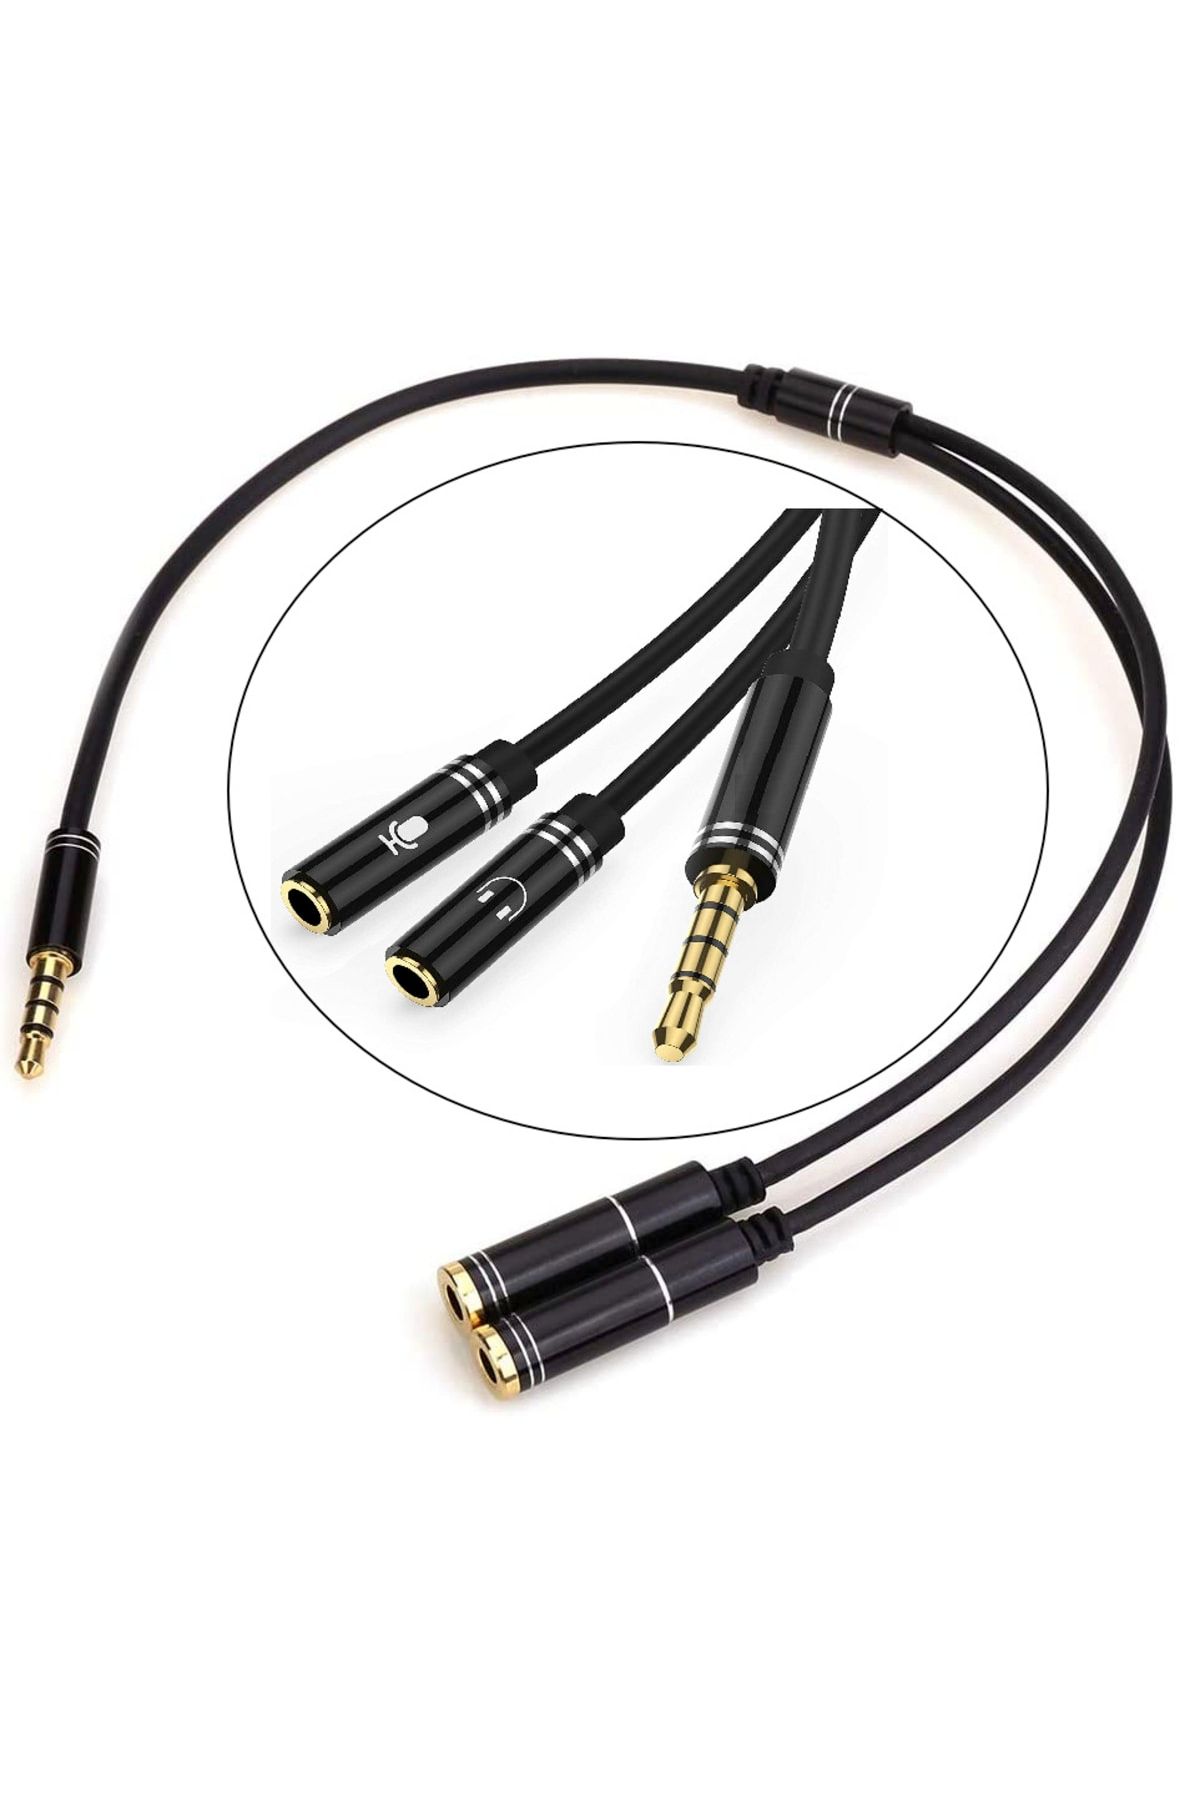 aogo Kulaklık Mikrofon Birleştirici Kablo Aparat 3.5mm Erkek 2x3.5mm Dişi Kulaklık Mic Audio Y Splitter